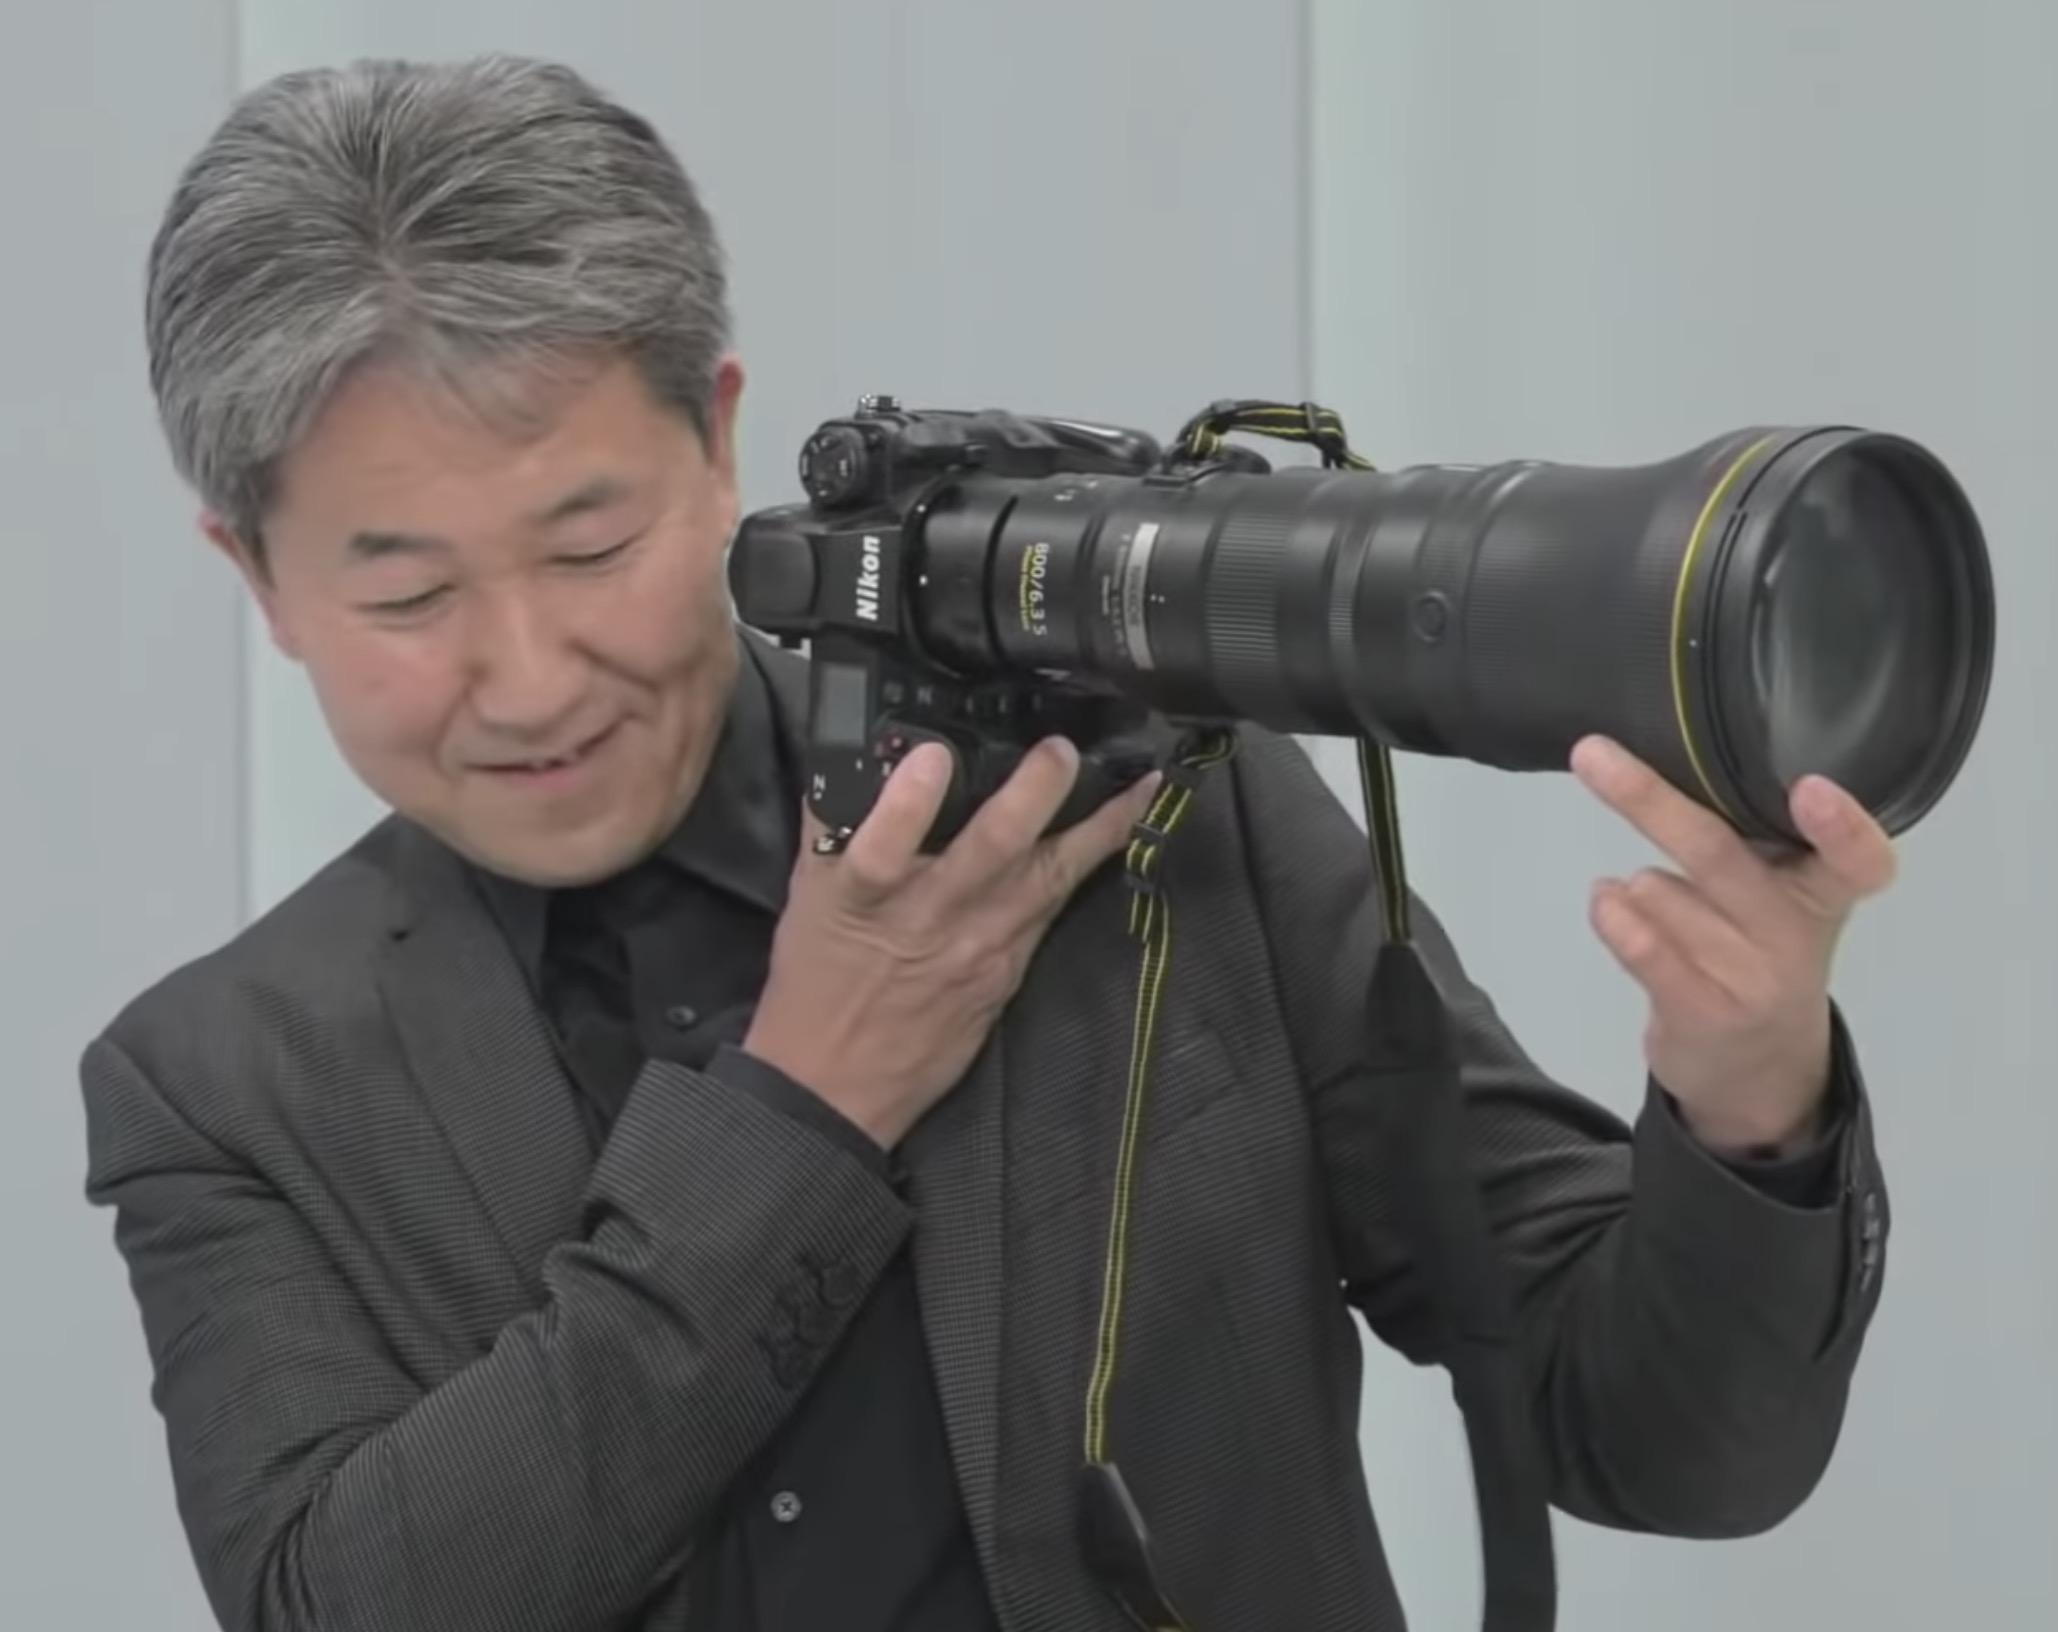 Nikon Z 800mm f/6.3 VR S - Kamera Express